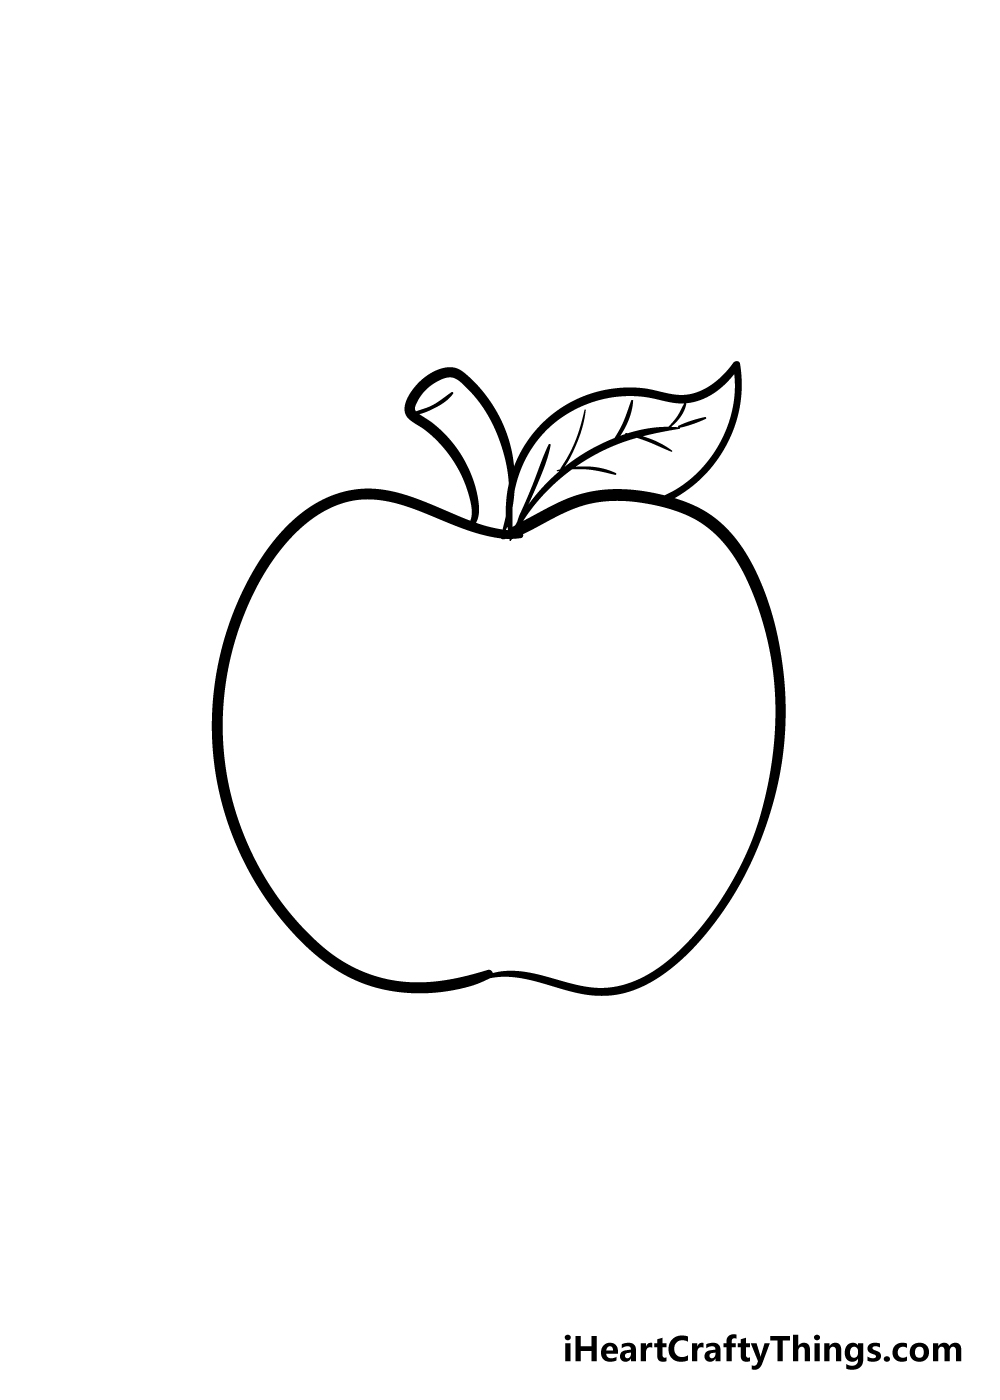 Apple 5 - Hướng dẫn chi tiết cách vẽ quả táo đơn giản với 6 bước cơ bản